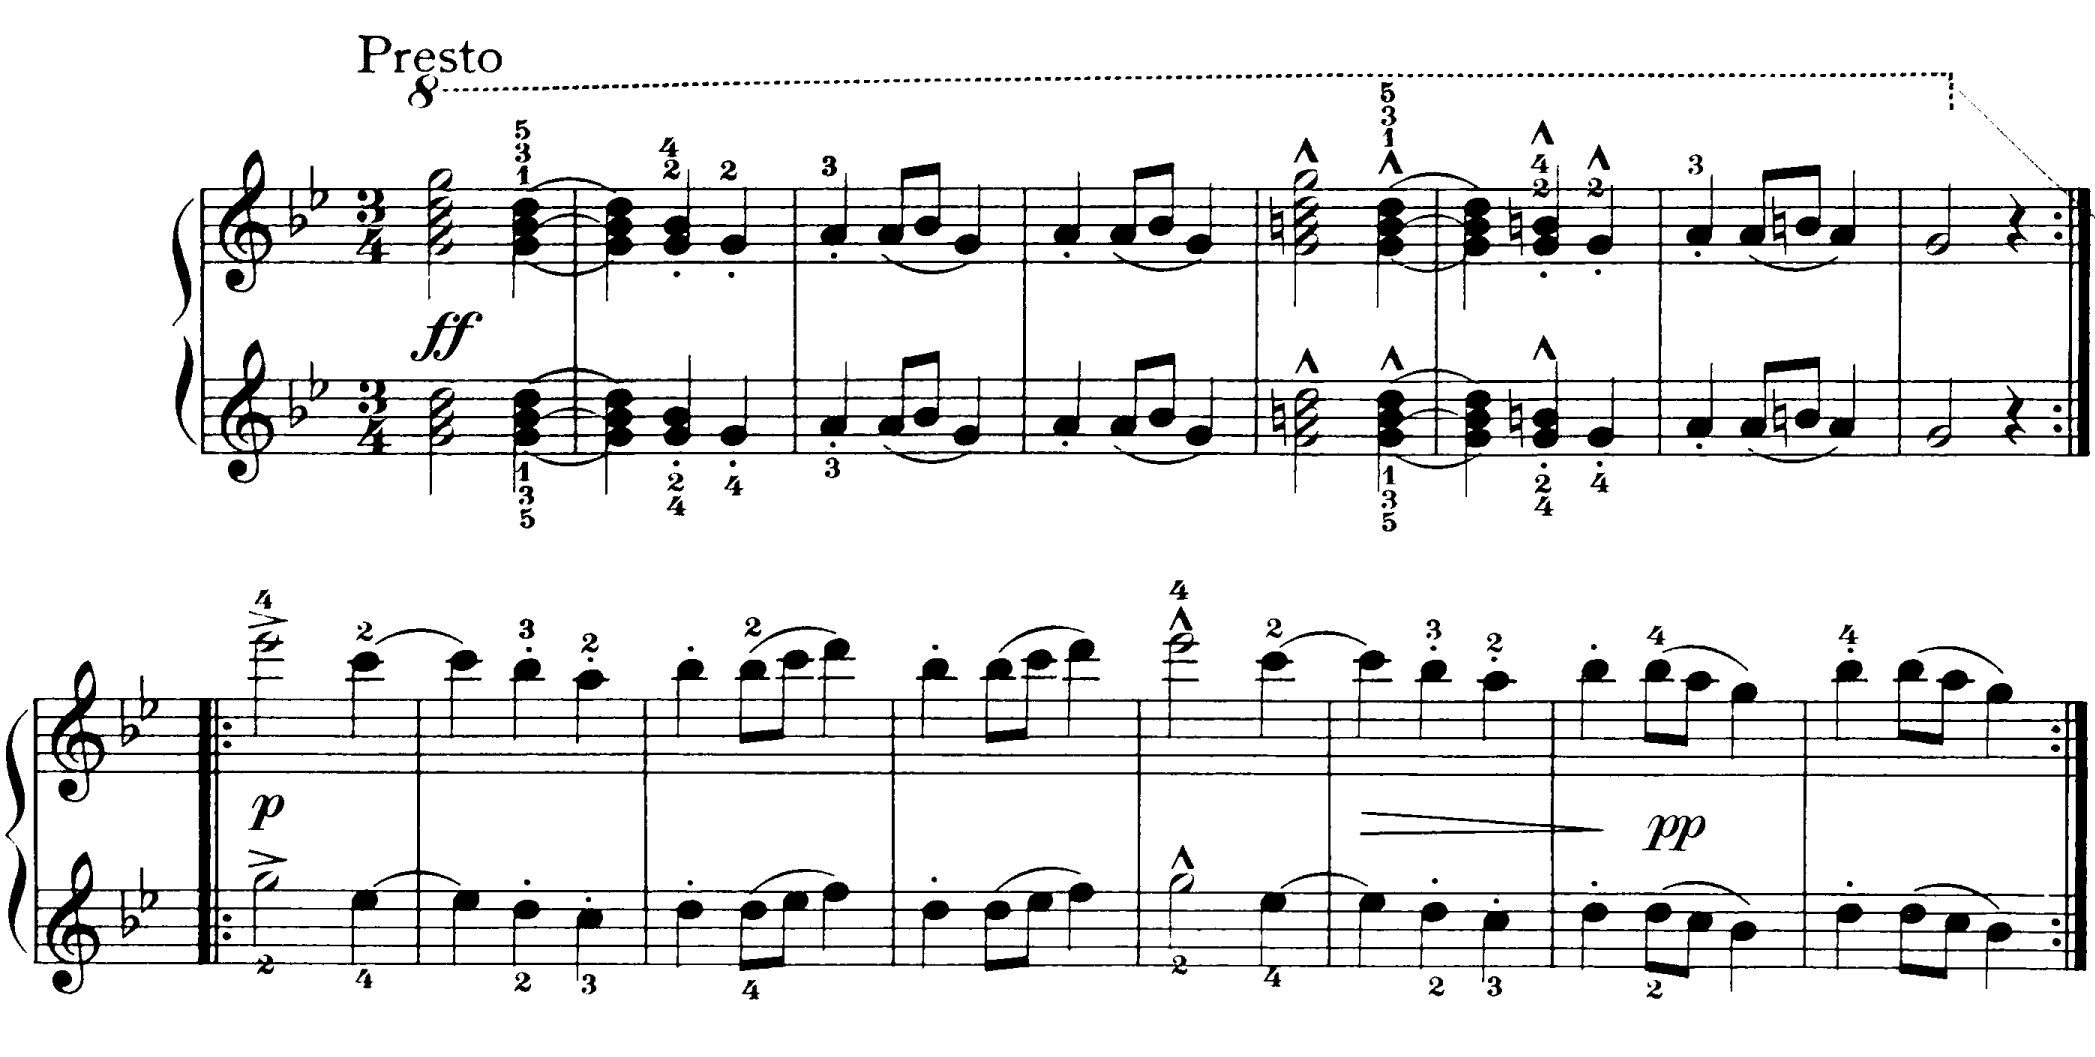 德伏扎克在《斯拉夫舞曲》中，用上了來自捷克的火烈舞 (furiant) 節奏，三拍子為主的旋律，一開始就出現以兩拍為重拍的希米奧拉 (hemiola) 節奏。後來，德伏扎克還把火烈舞應用至交響曲。